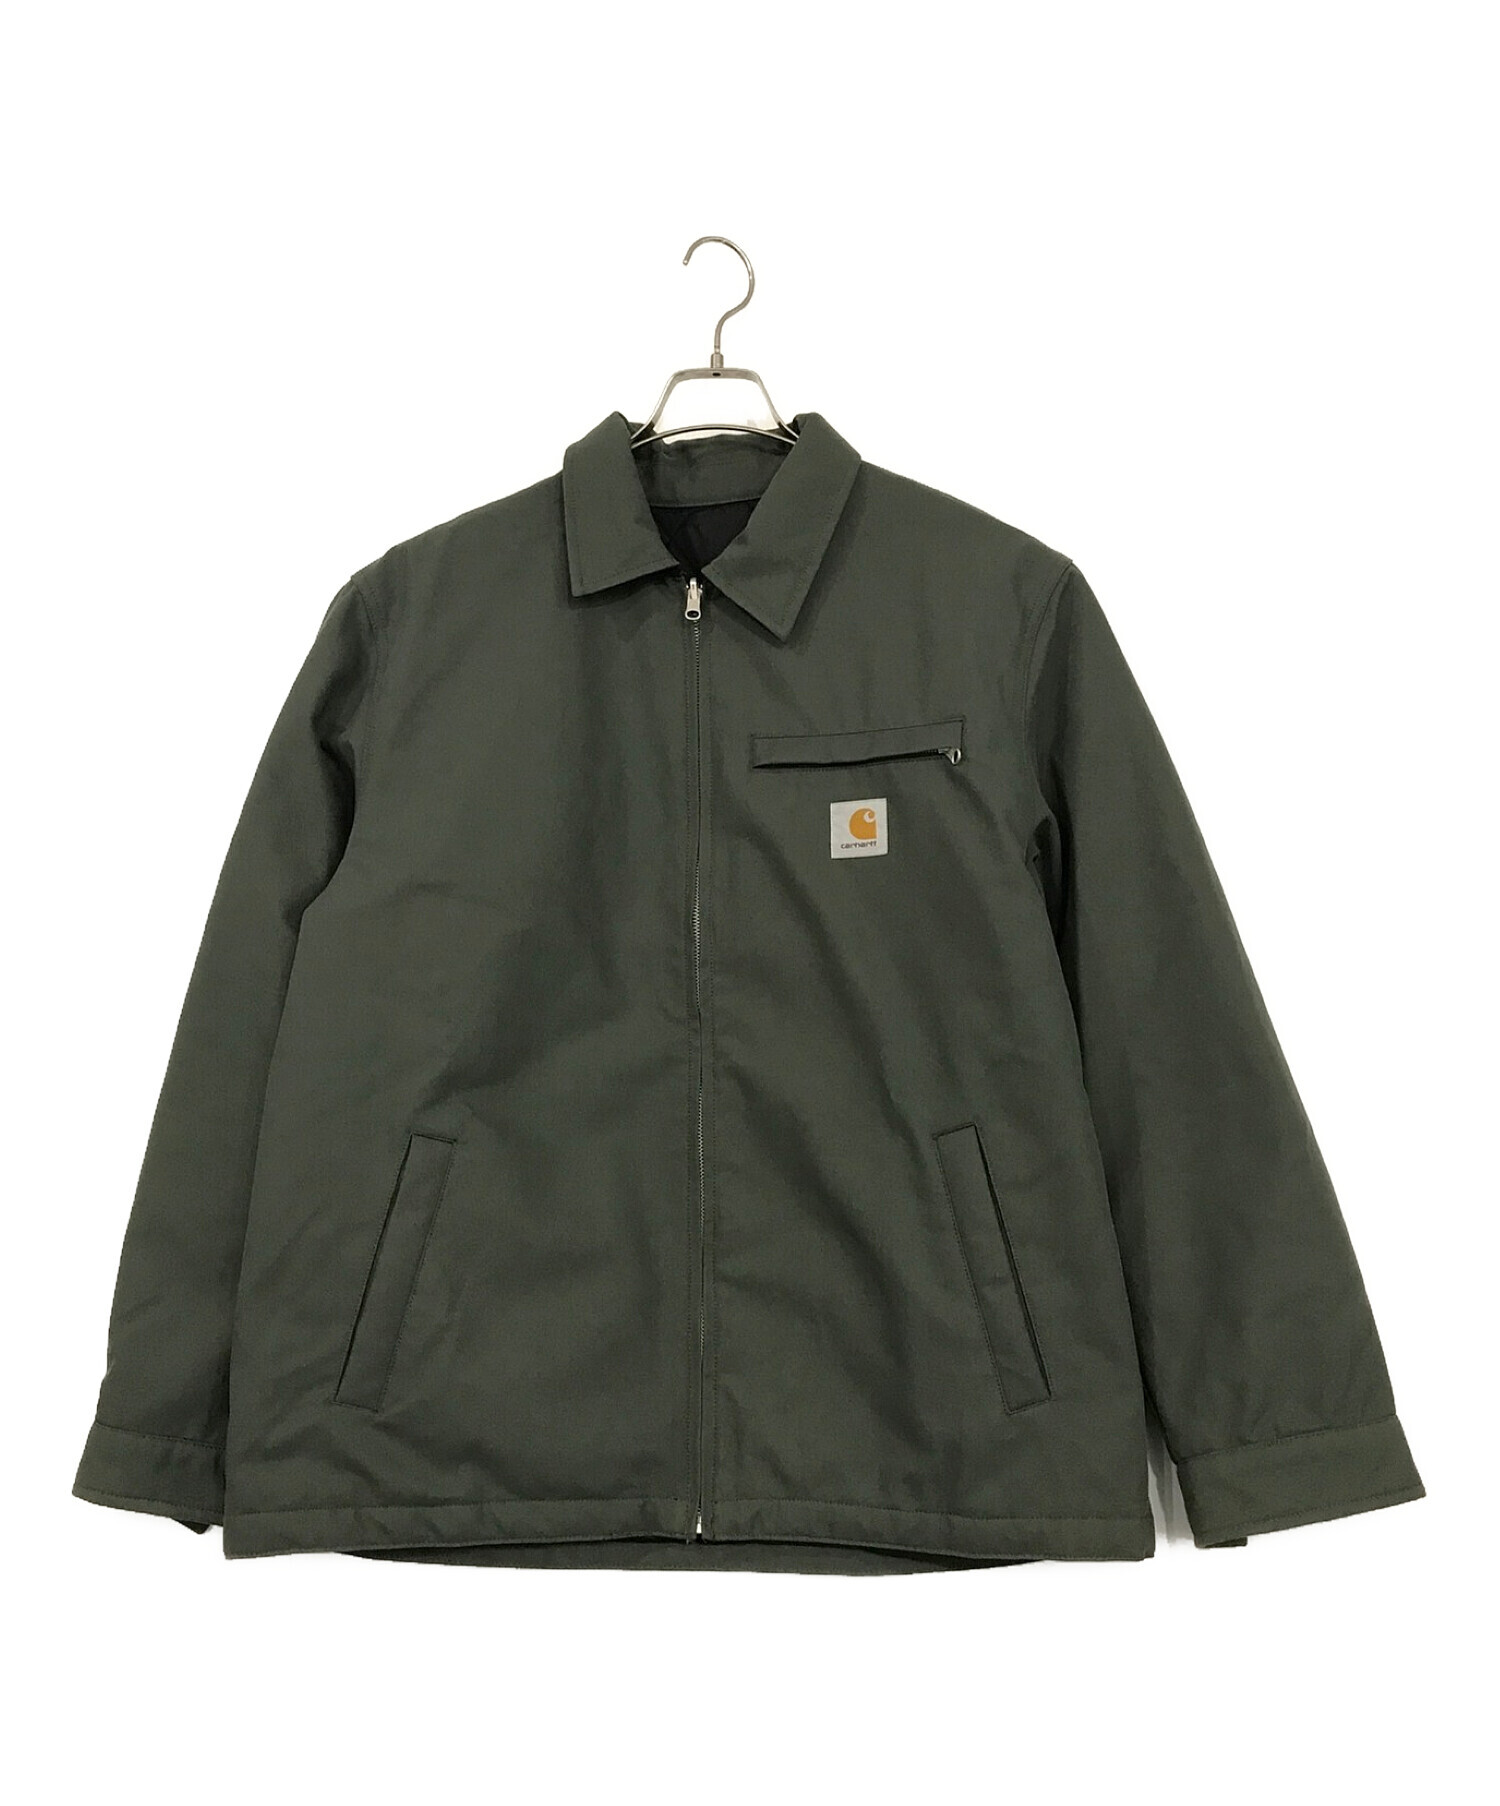 Carhartt WIP (カーハートダブリューアイピー) Madera Jacket グリーン×ブラック サイズ:SIZE M